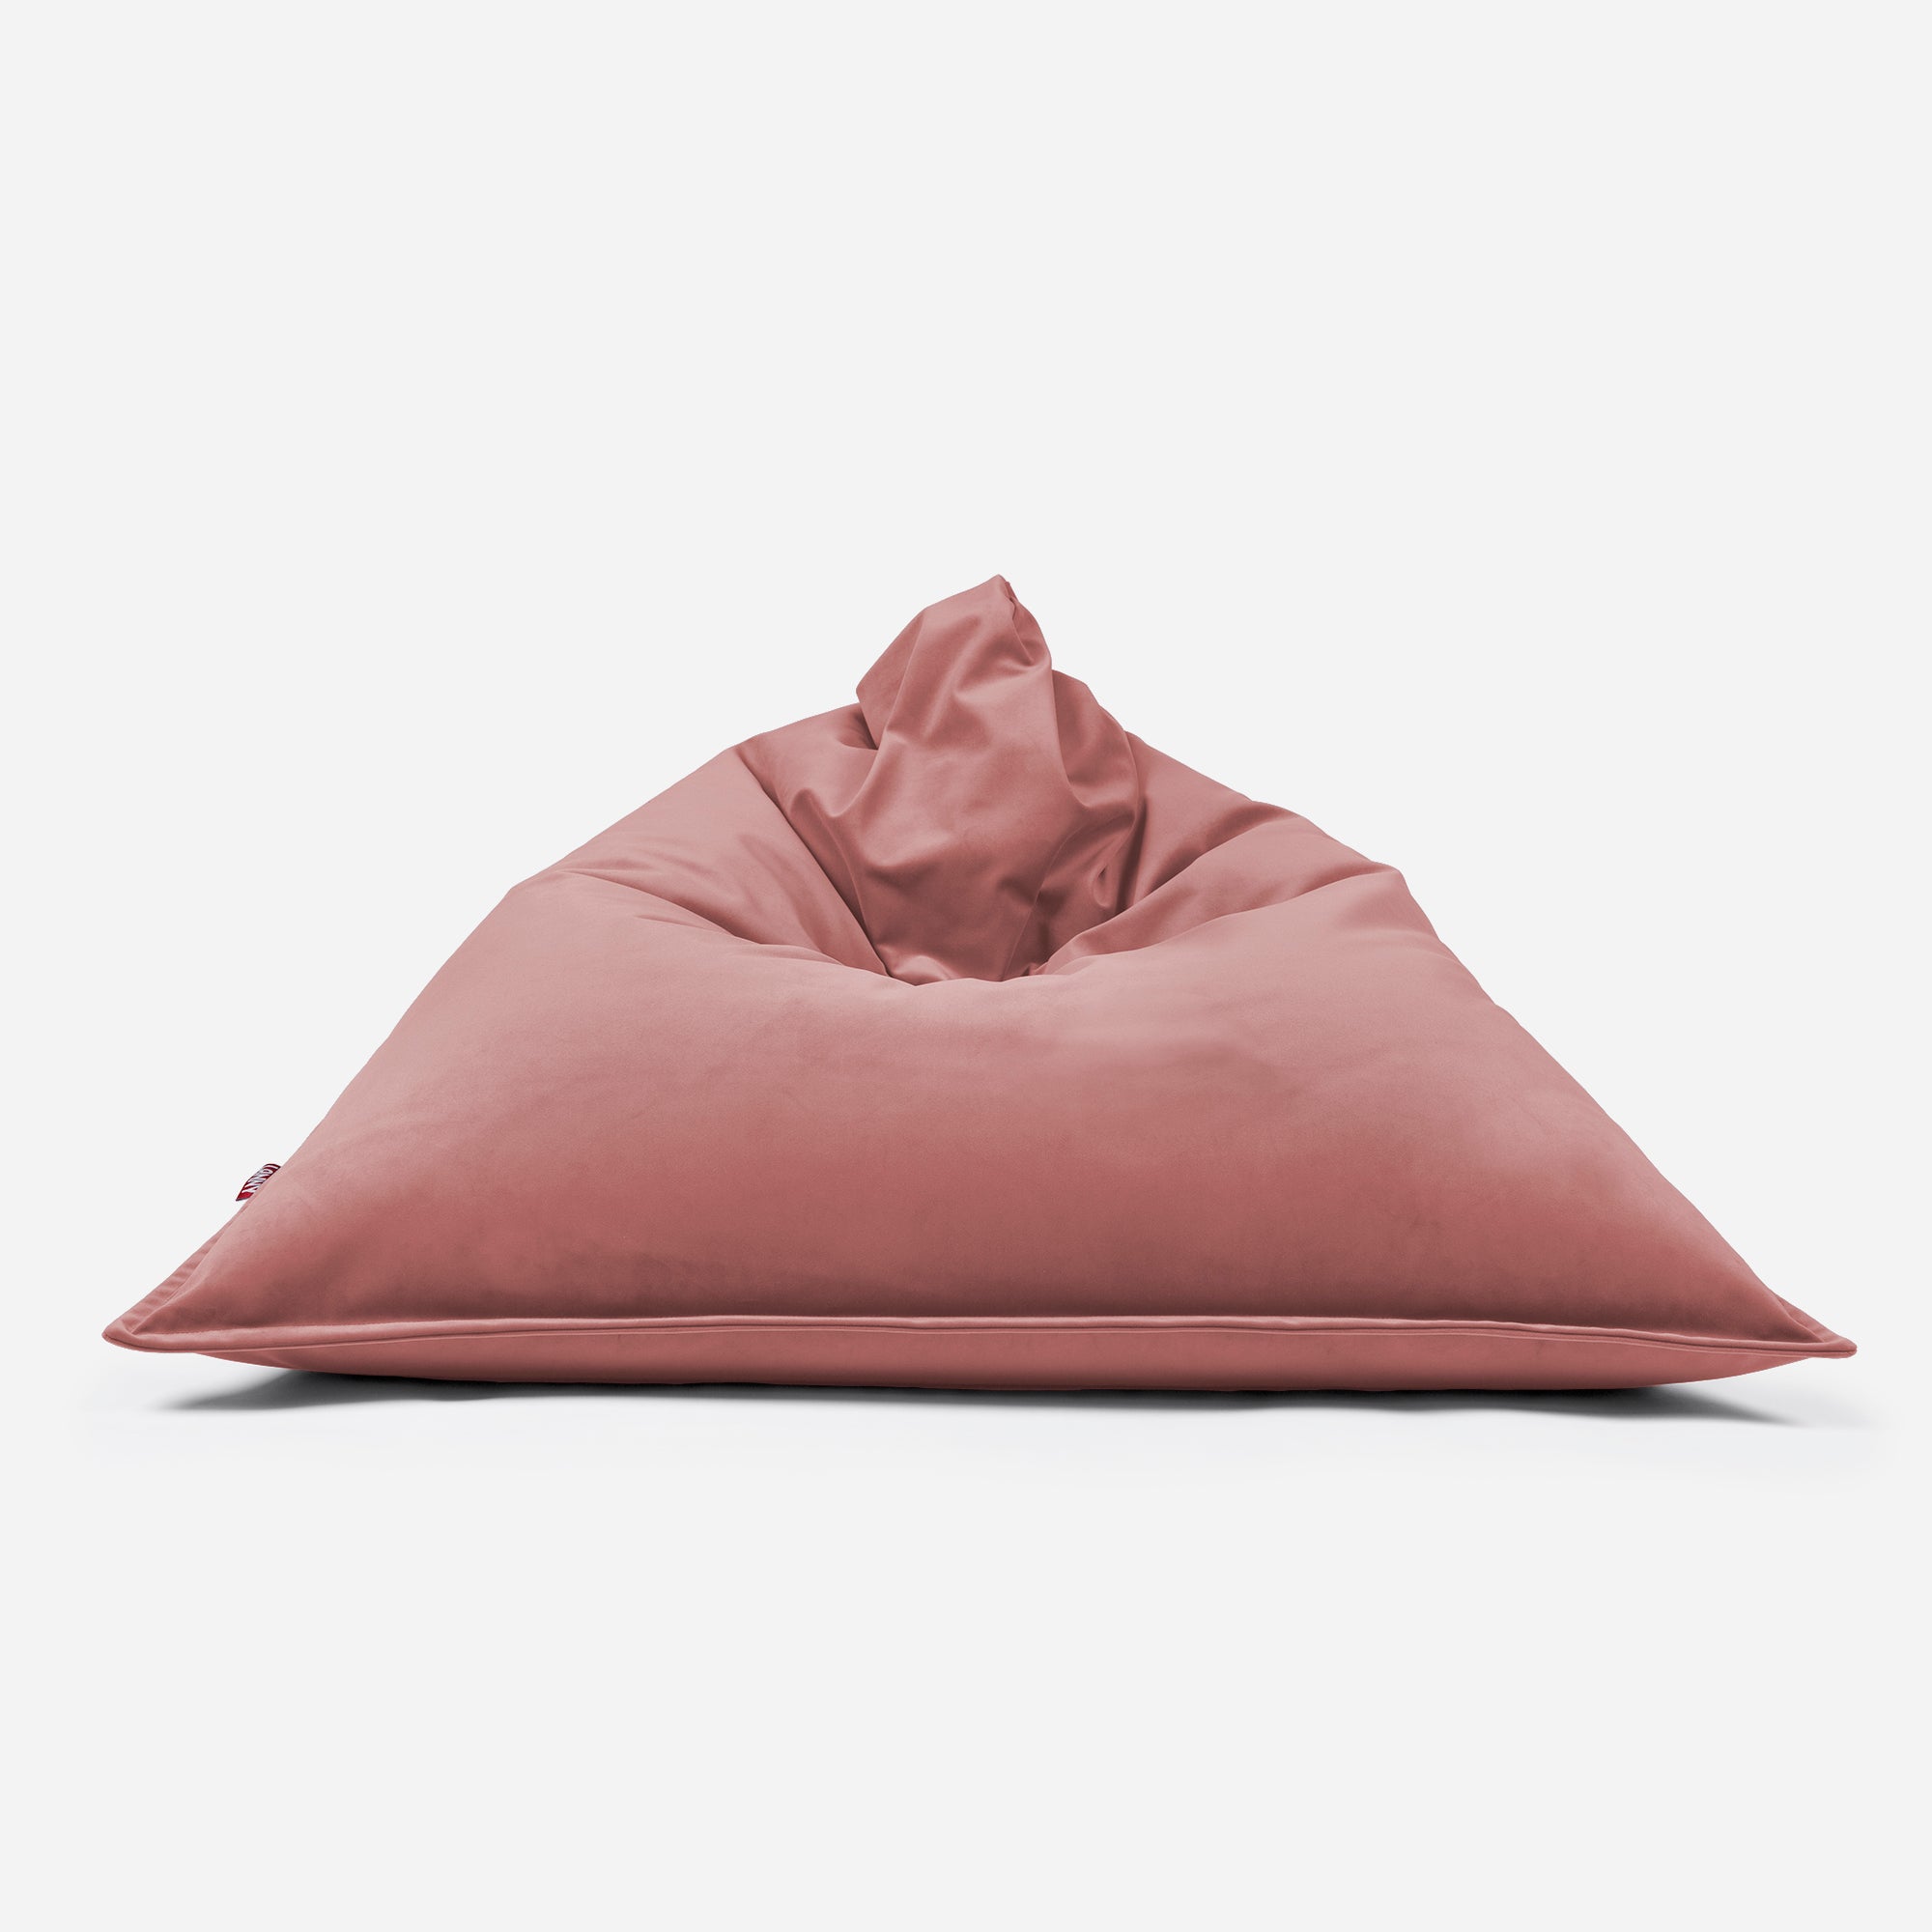 Sloppy Velvet Pink Bean bag